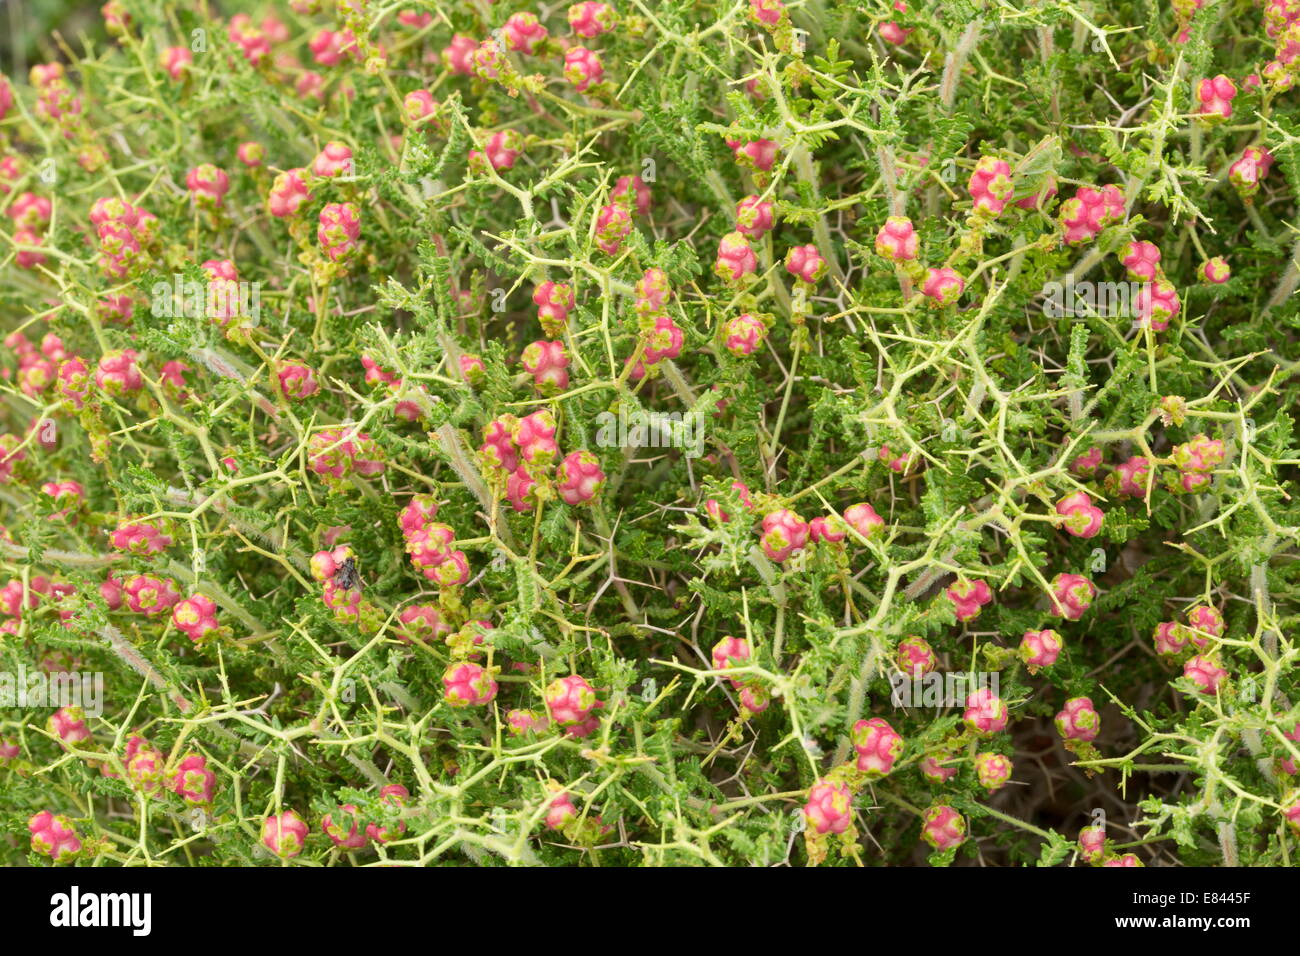 Stachelige Burnet, Sarcopoterium Spinosum in Frucht. Eine Garrigue-Pflanze,  stark angepasst zum Weiden lassen. Chios, Griechenland Stockfotografie -  Alamy